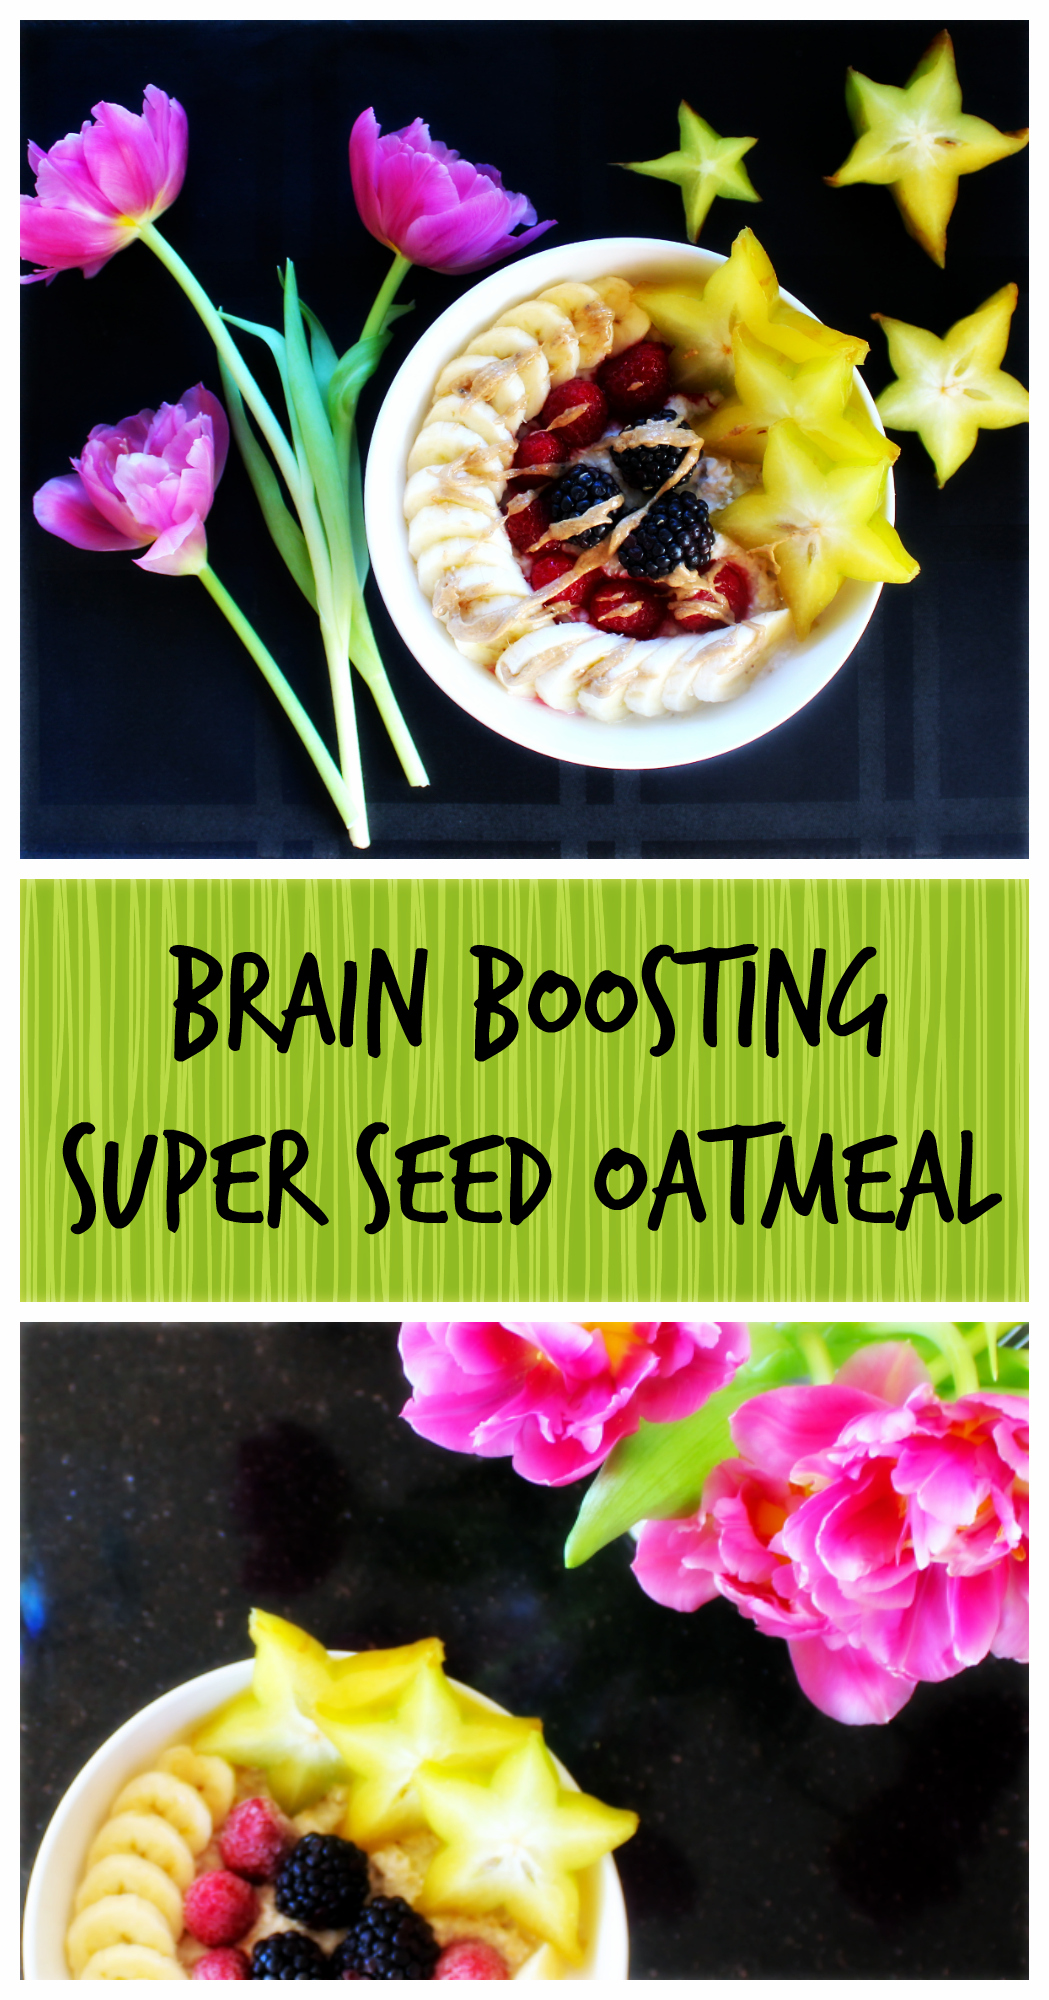 Brain Boosting Super Seed Oatmeal